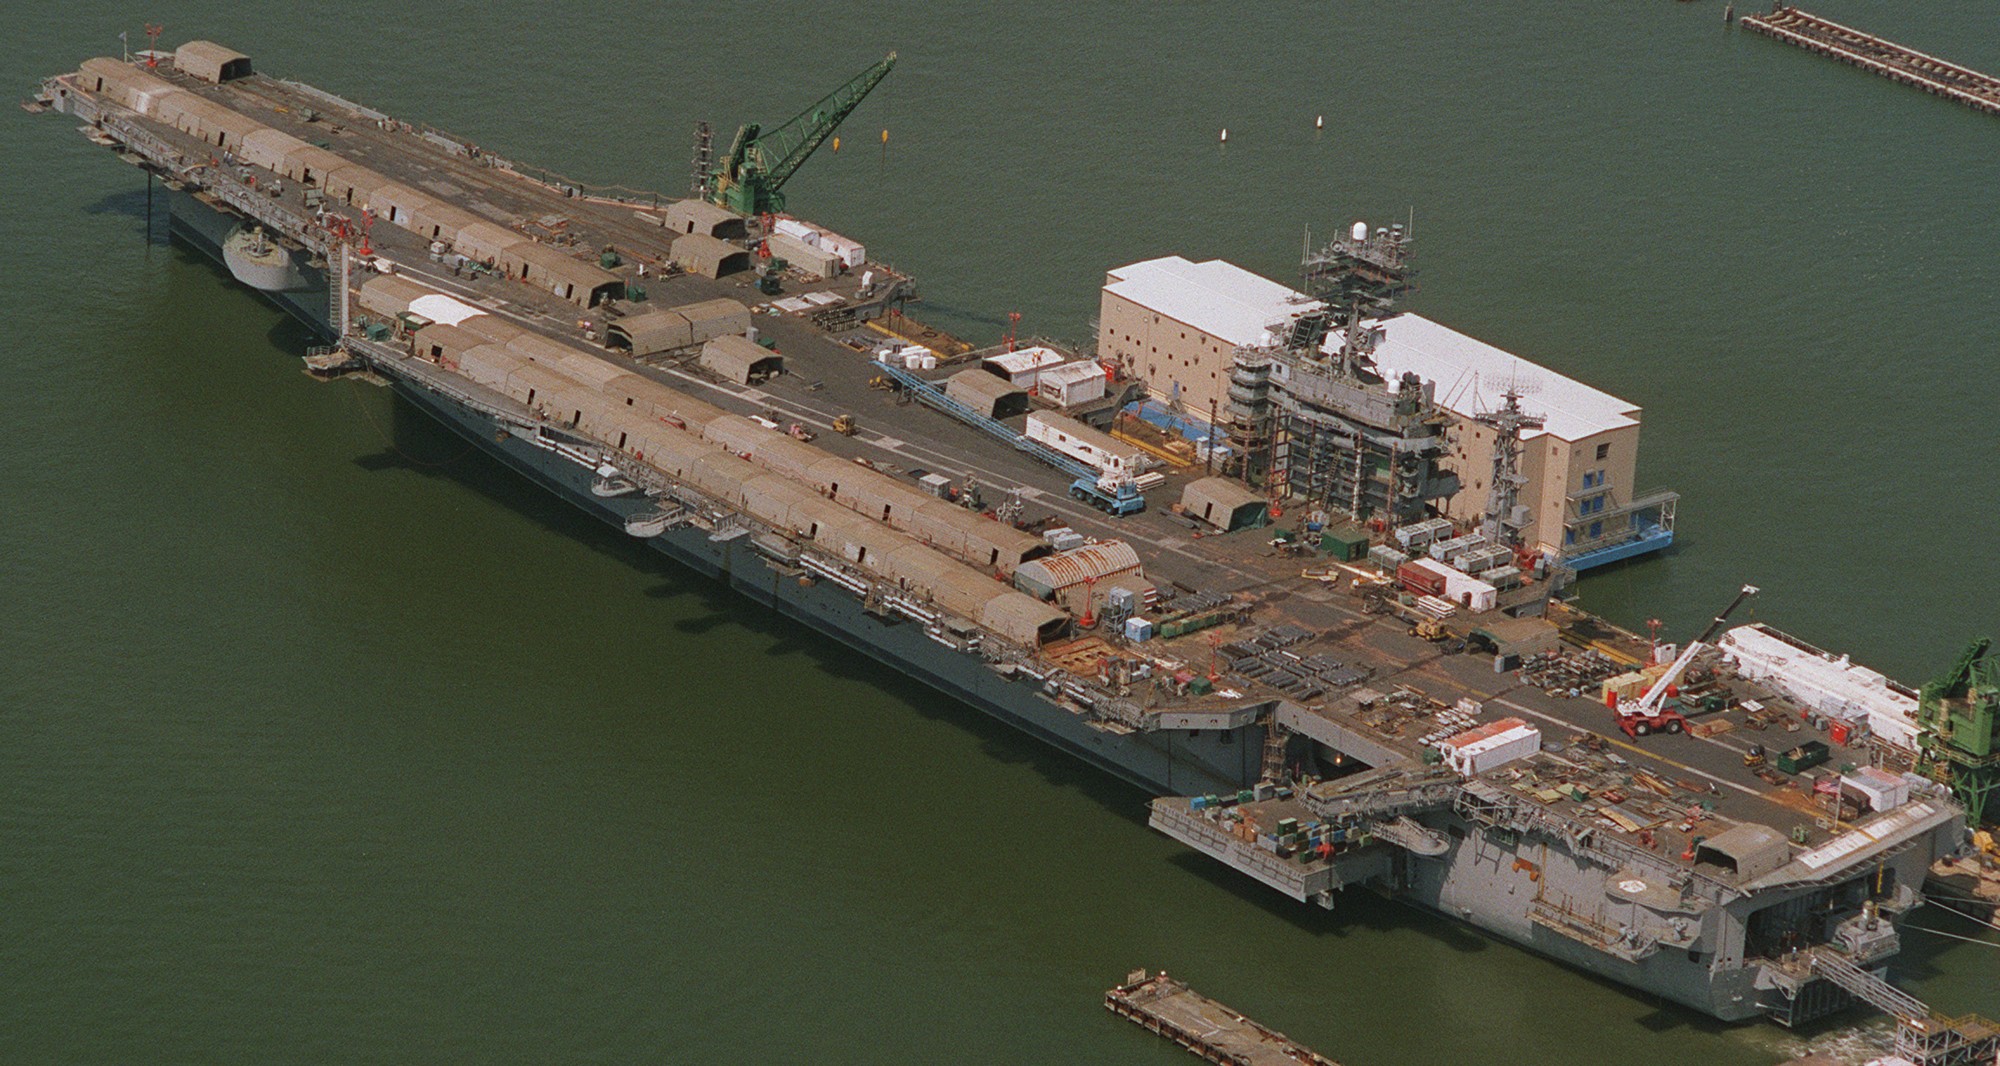 cvn-69 uss dwight d. eisenhower aircraft carrier us navy newport news complex overhaul coh 371